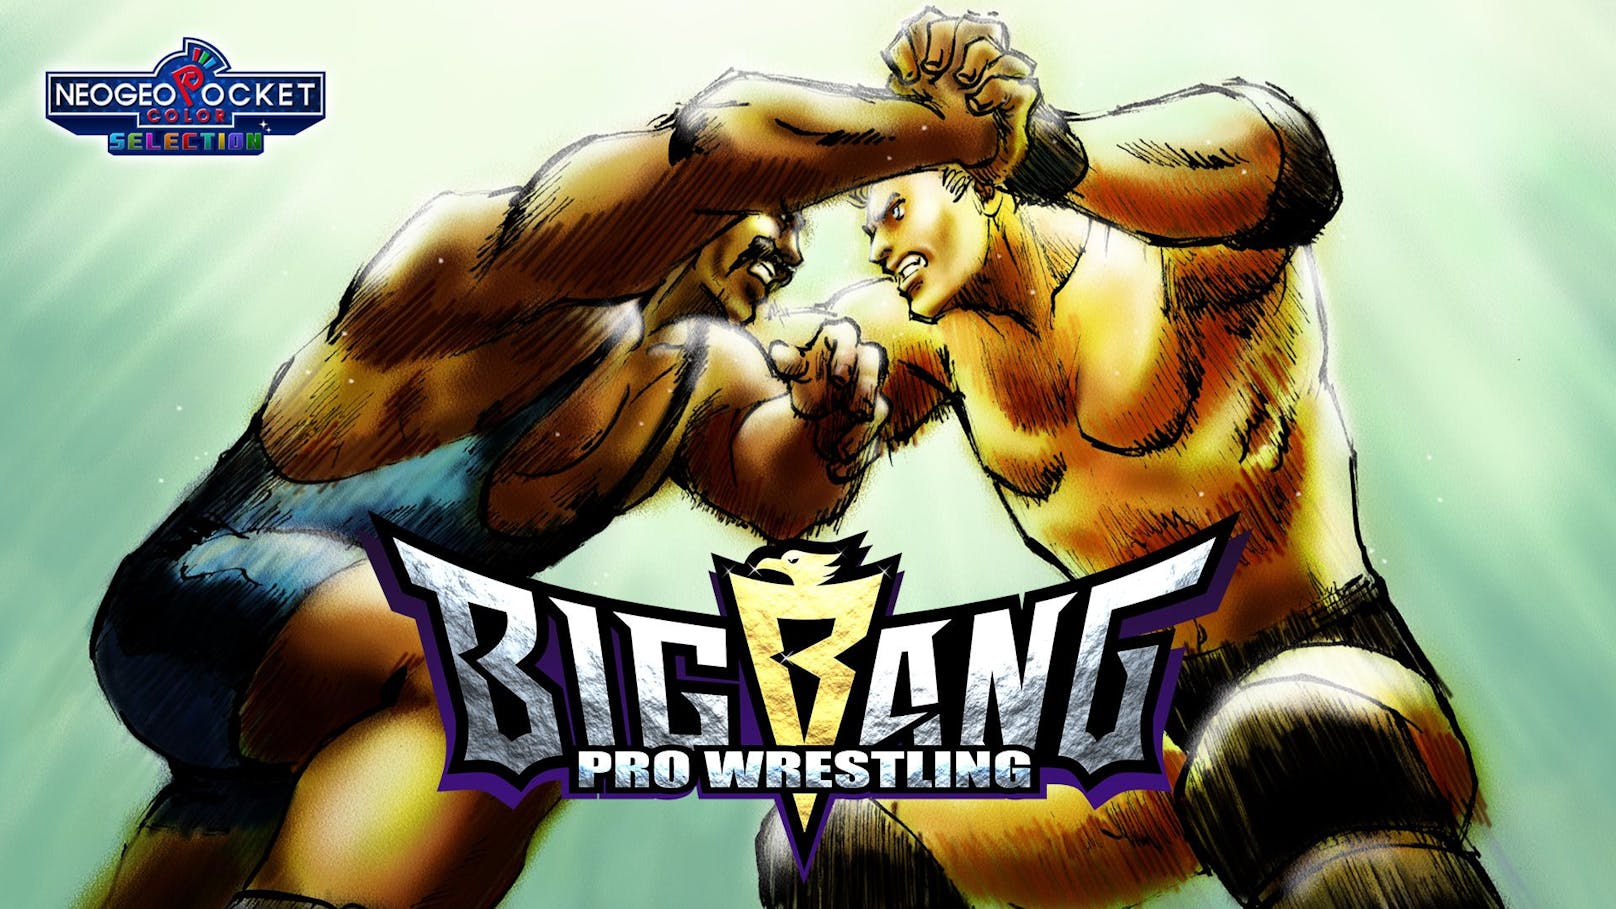 Hat bereits 22 Jahre auf dem Buckel und matcht sich jetzt als Switch-Port: "Big Bang Pro Wrestling".